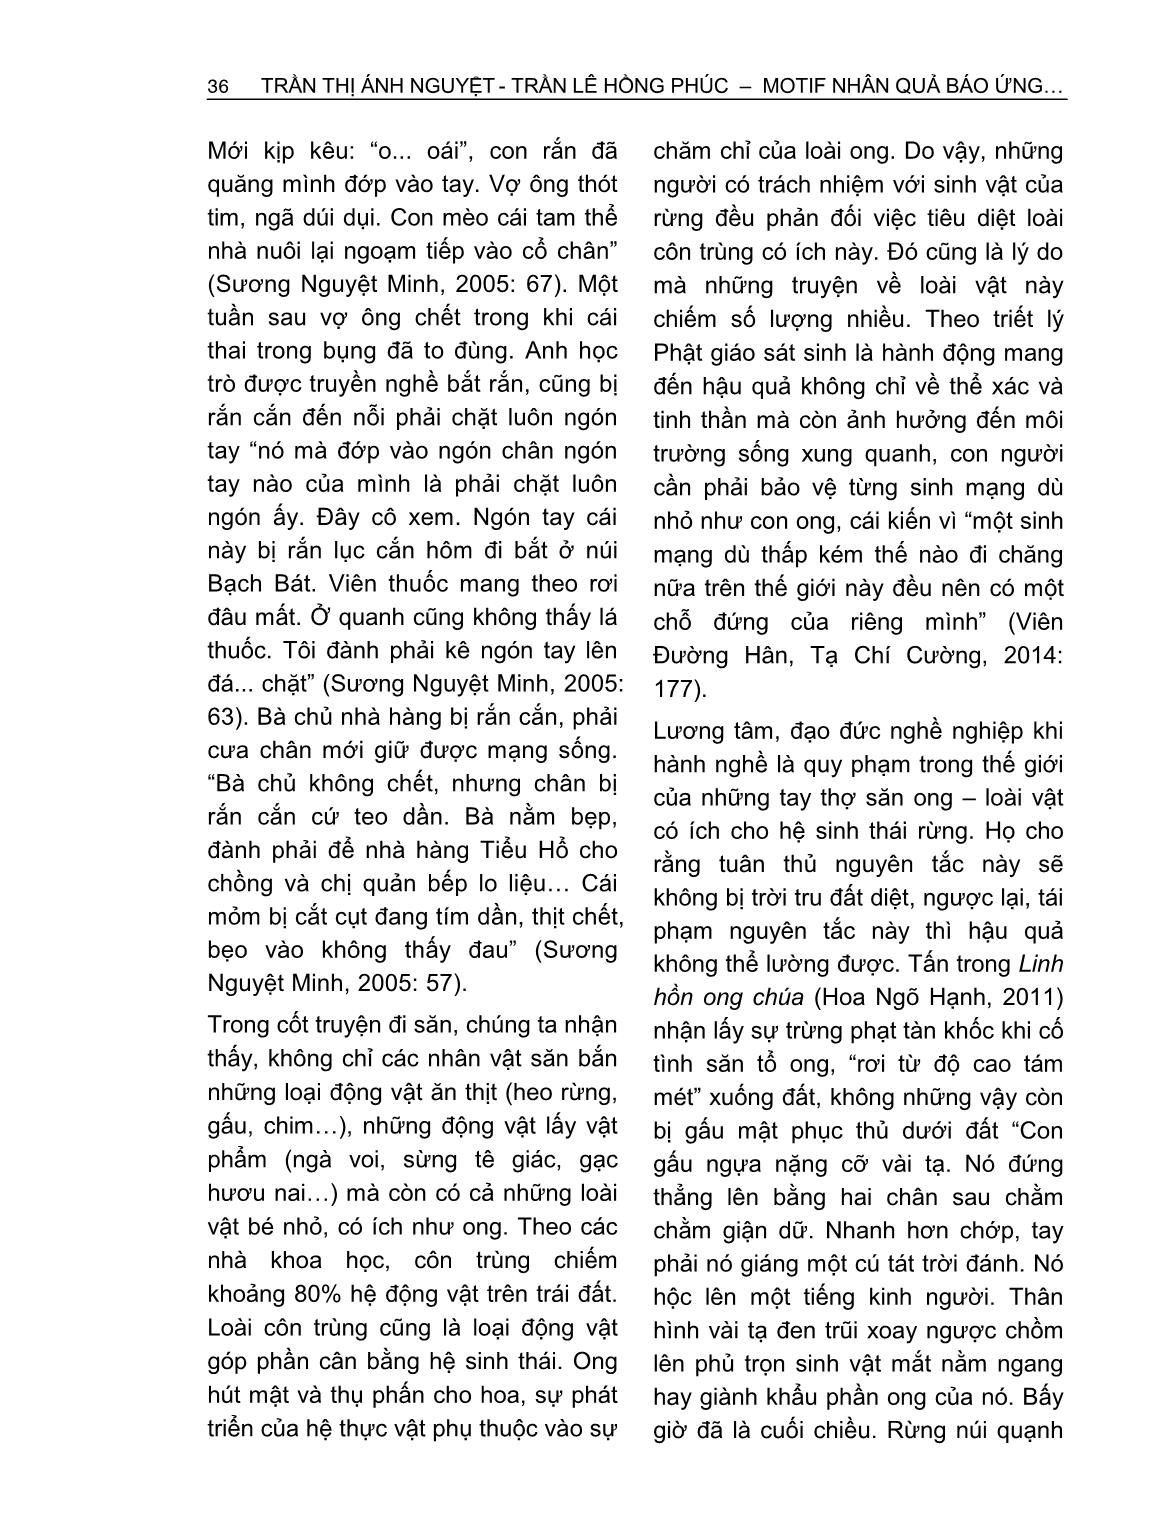 Motif nhân quả báo ứng trong văn xuôi sinh thái Việt Nam đương đại từ góc nhìn Phật Giáo trang 4